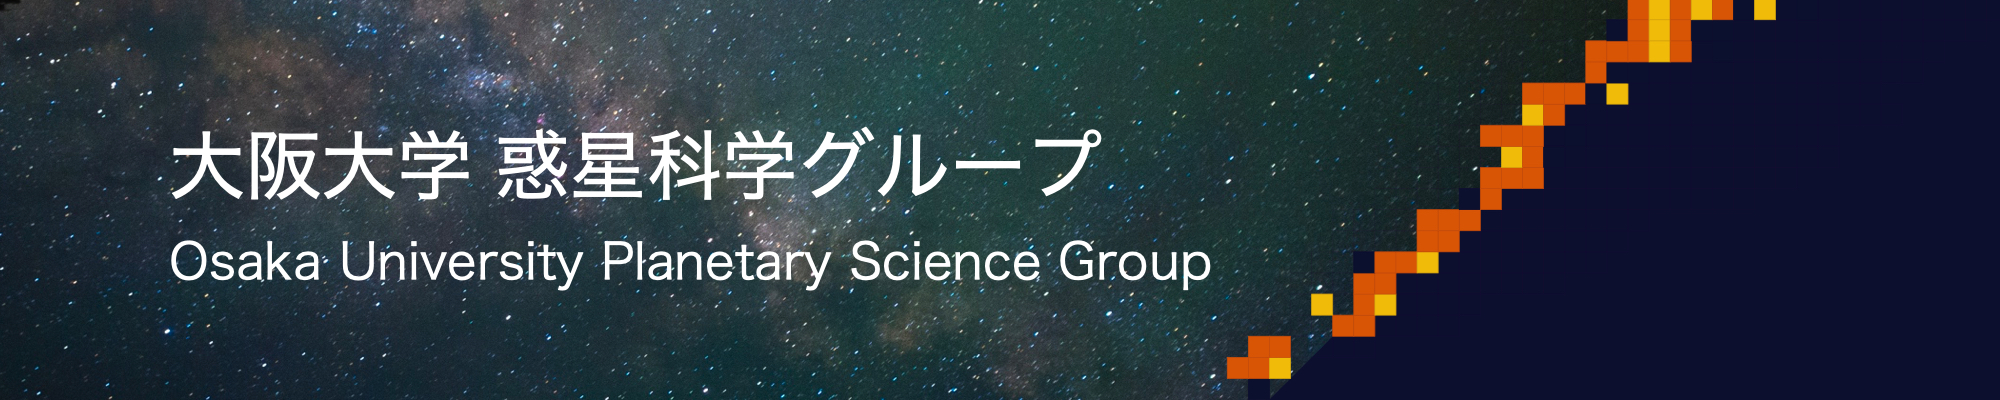 惑星科学グループホームページのタイトル